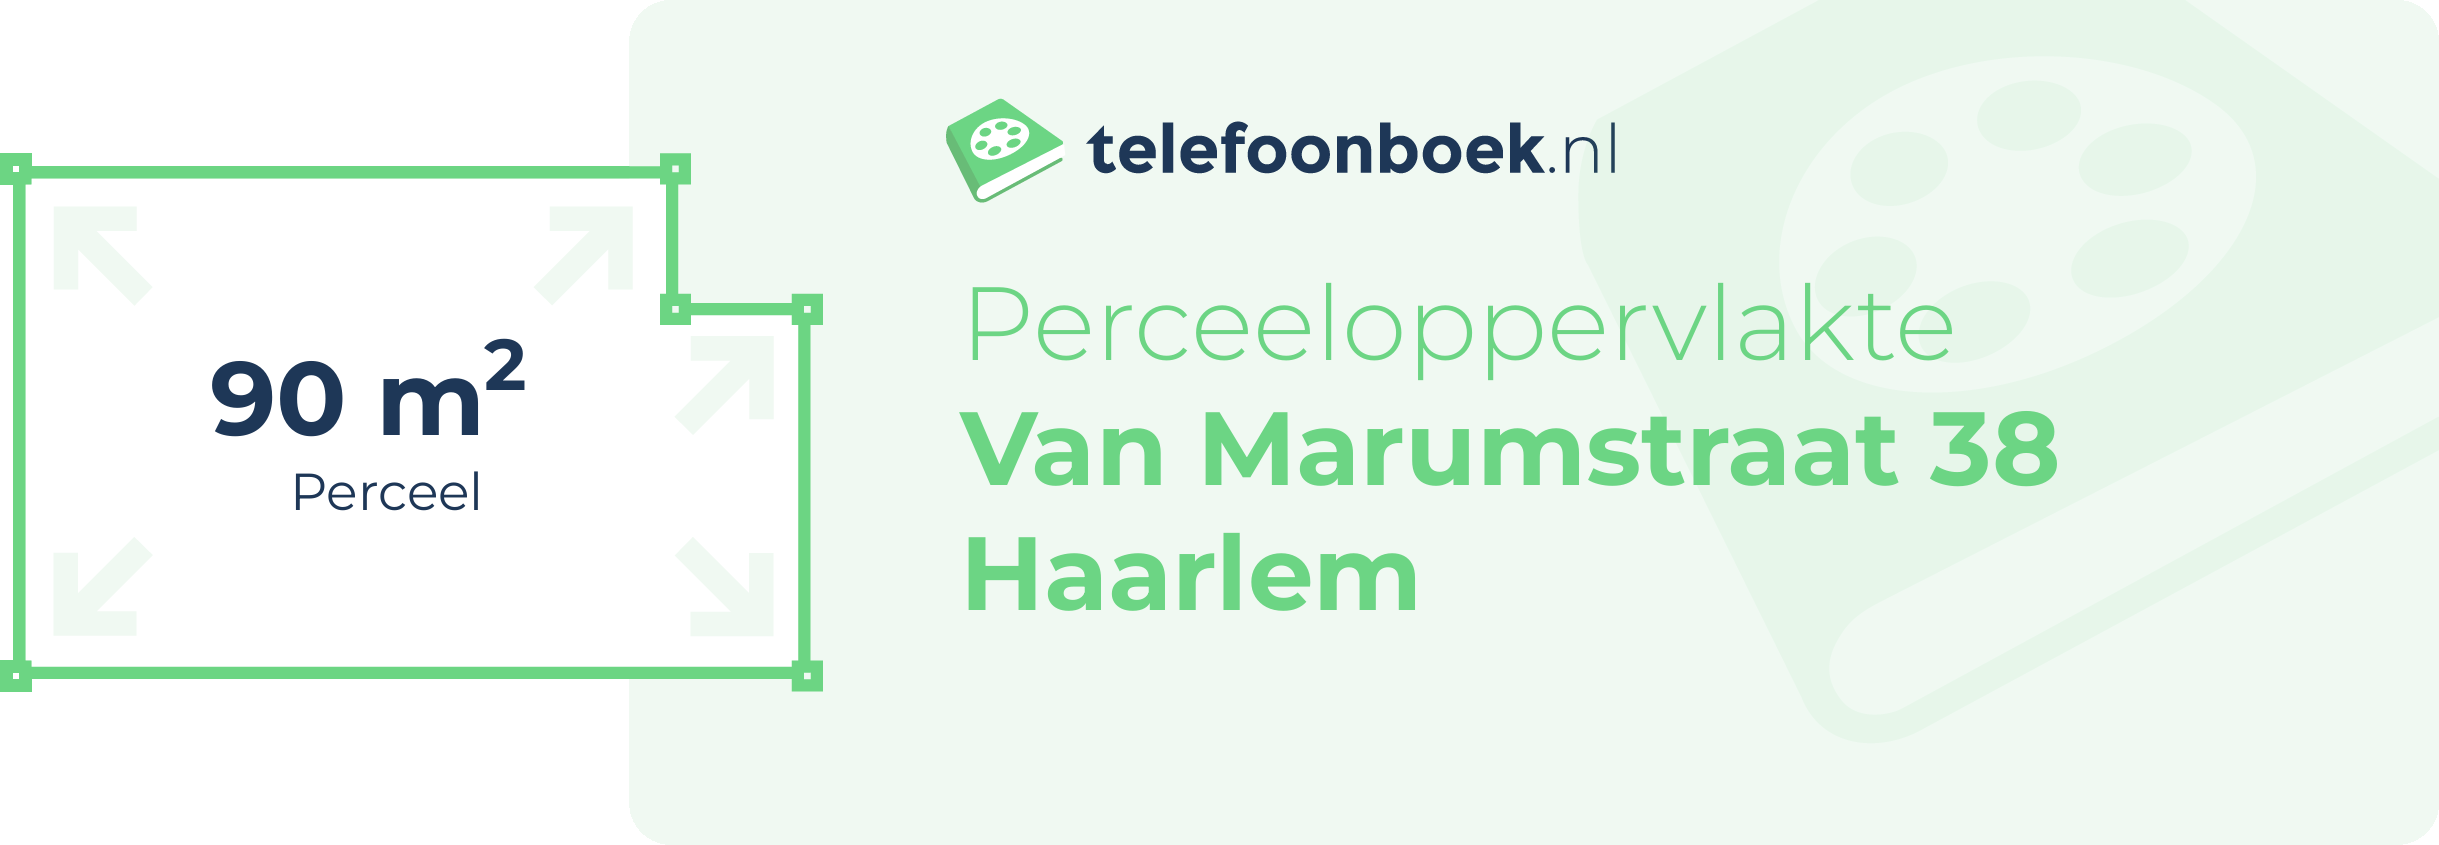 Perceeloppervlakte Van Marumstraat 38 Haarlem